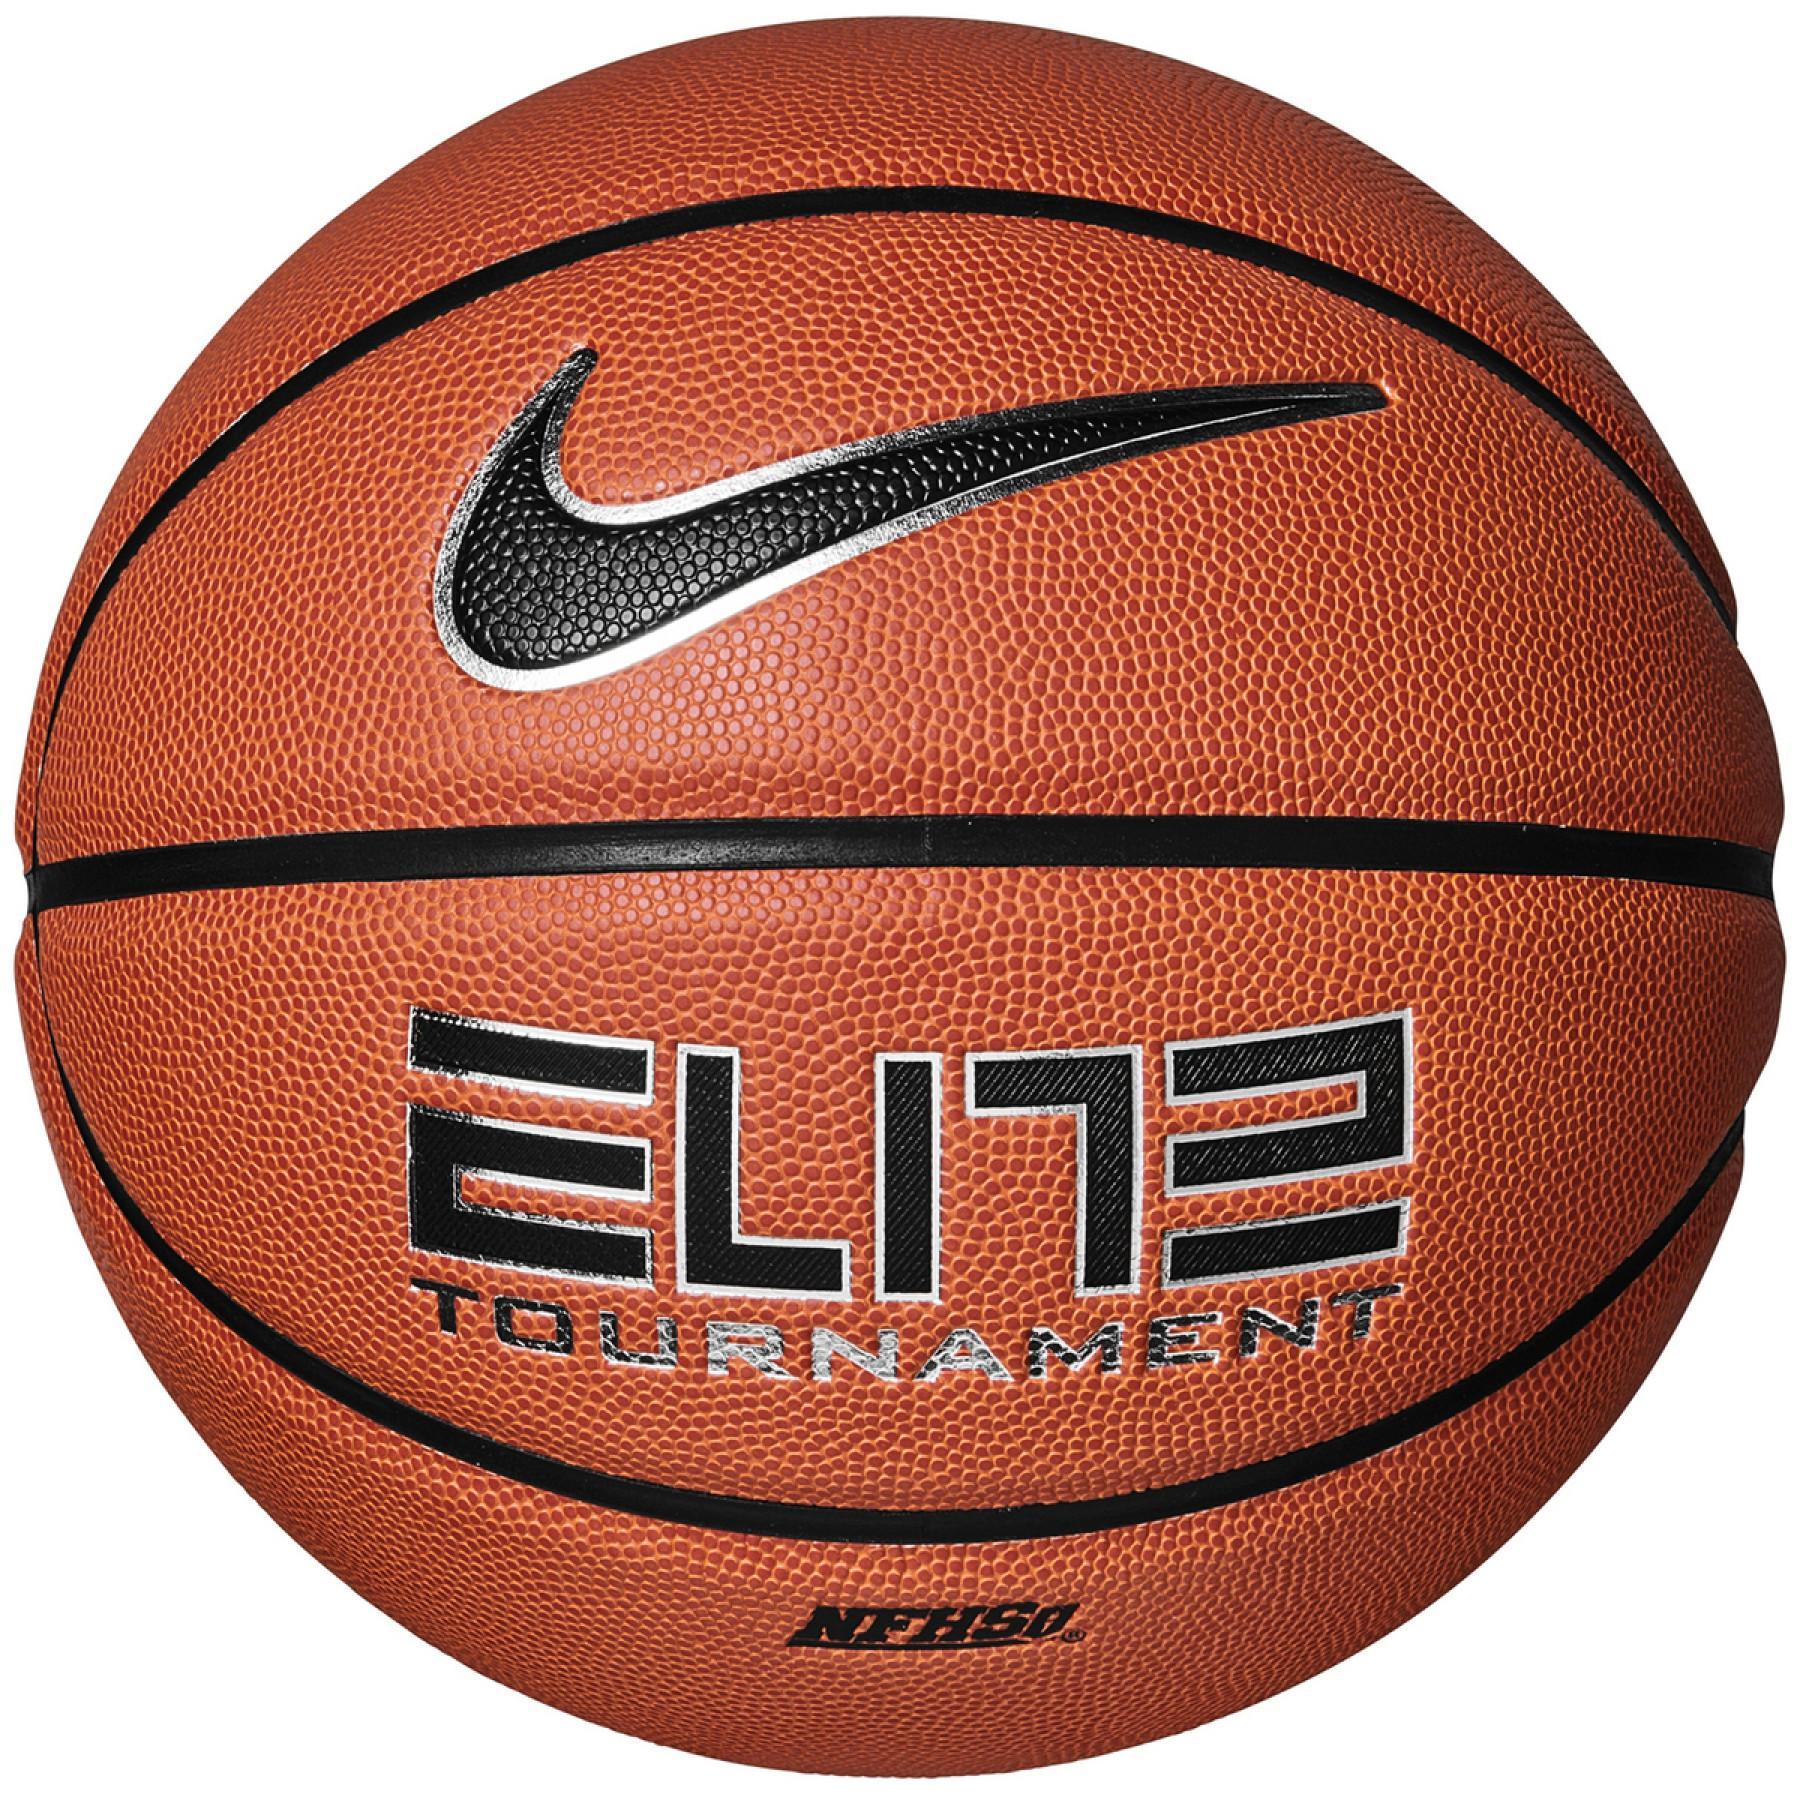 Basketball Nike elite tournament